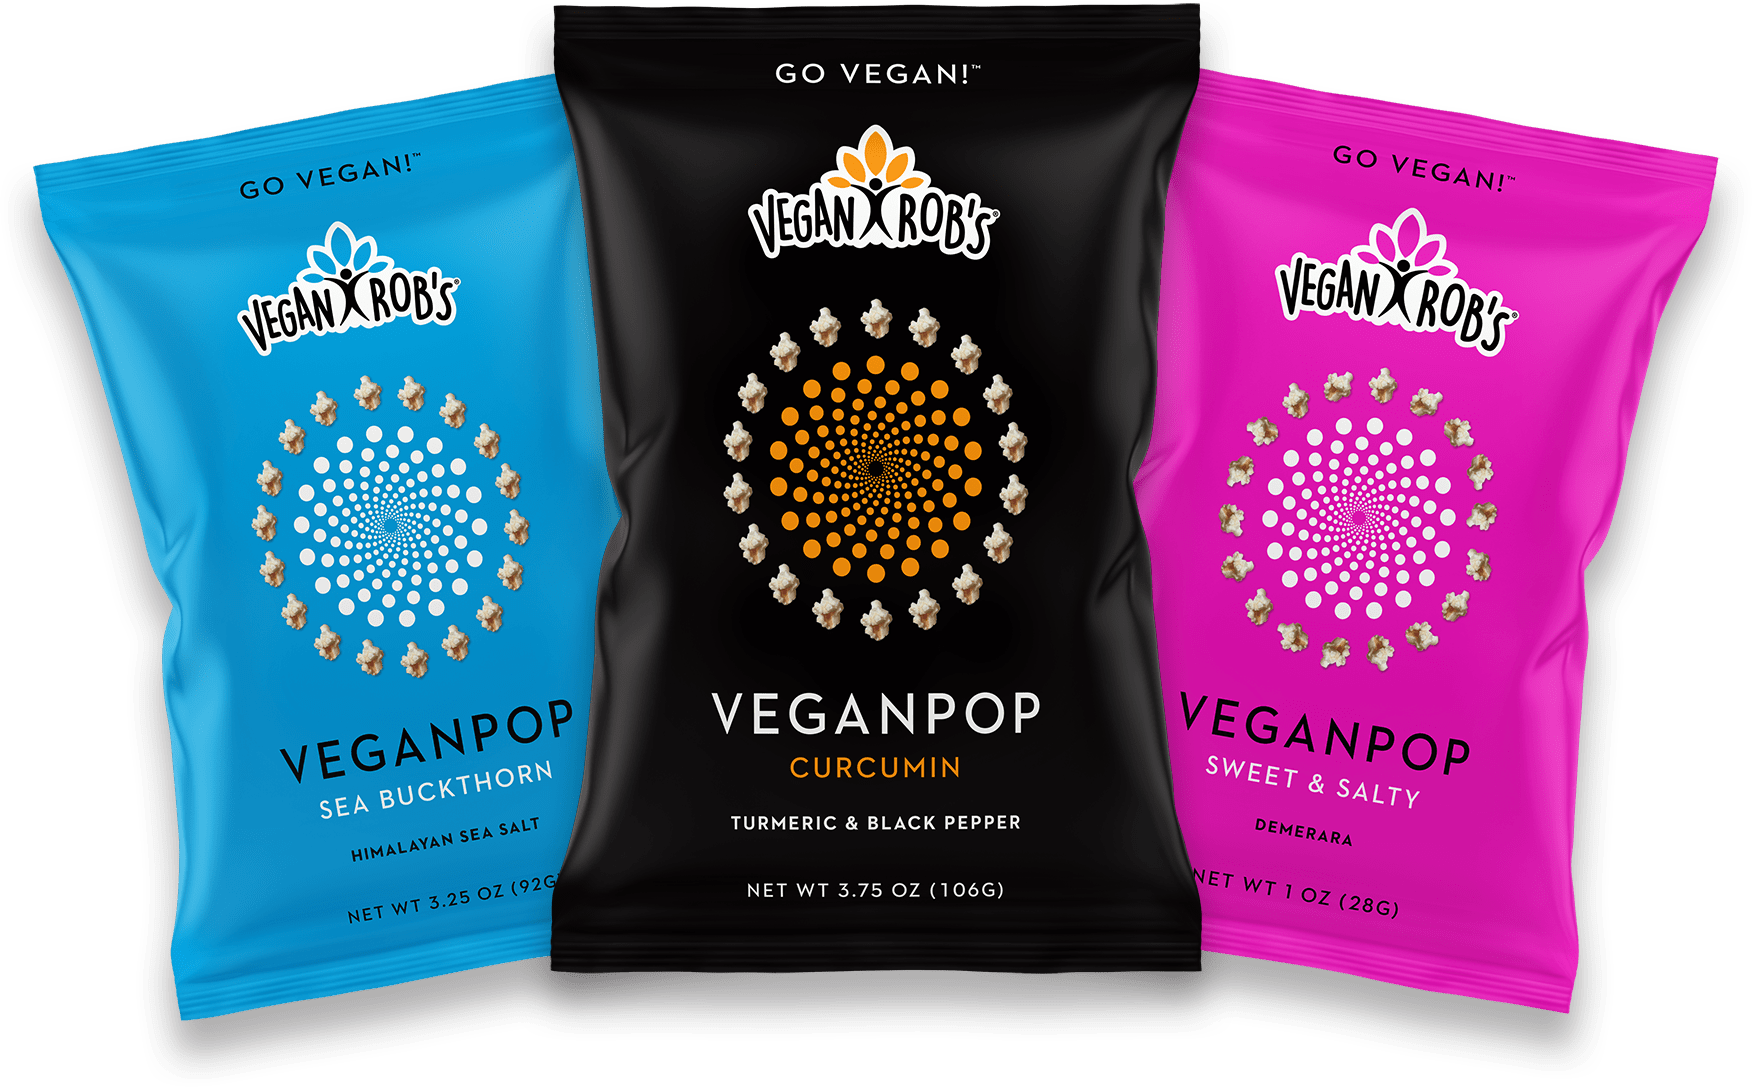 Vegan Rob's Veganpop bags